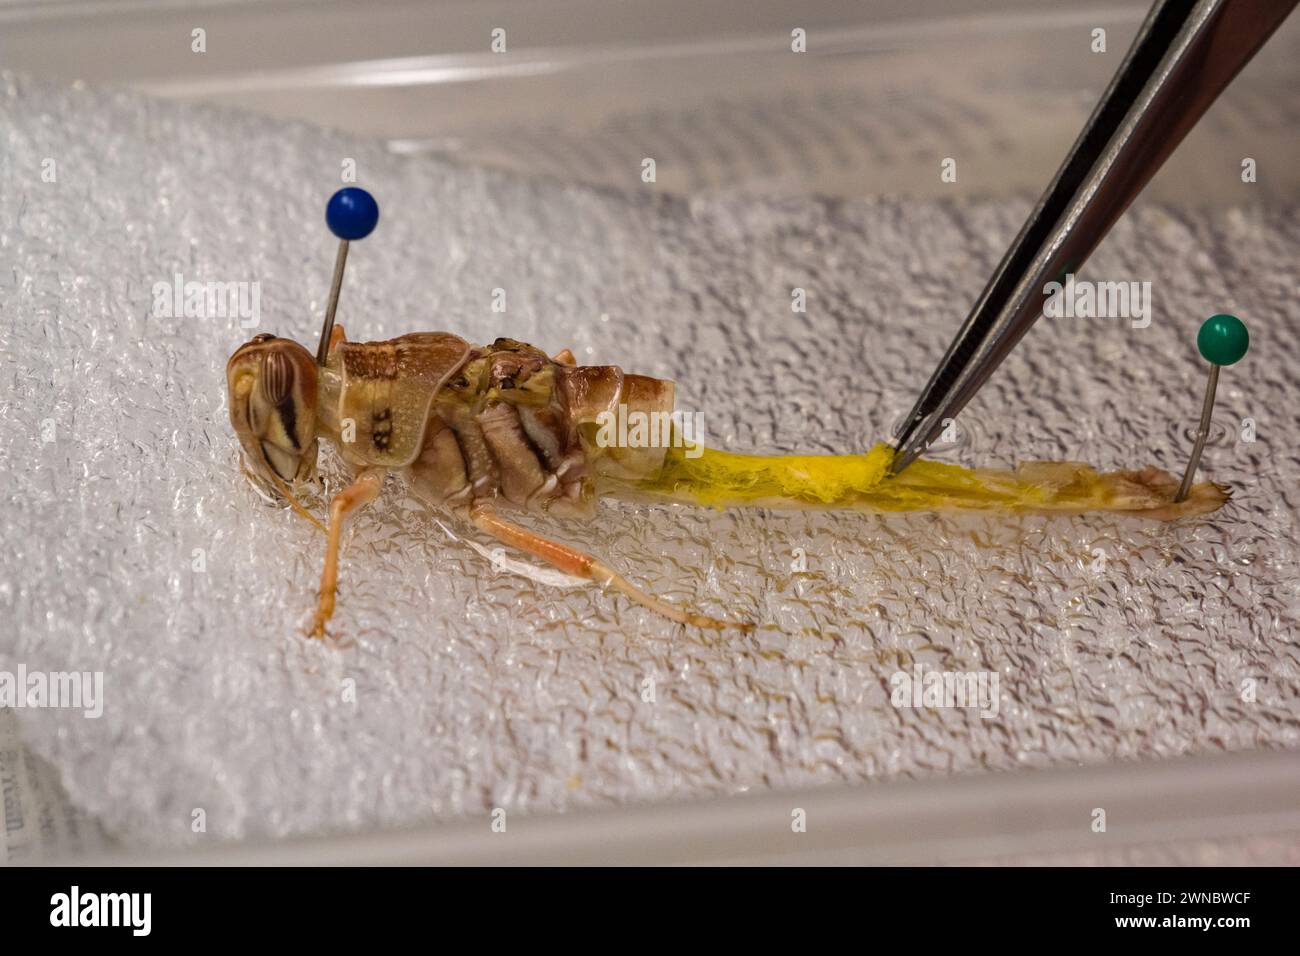 Untersuchung einer WüstenHeuschrecke (Schistocerca gregaria) nach Dissektion (Untersuchung des Gasaustauschsystems) an einer britischen Sekundarschule. Stockfoto